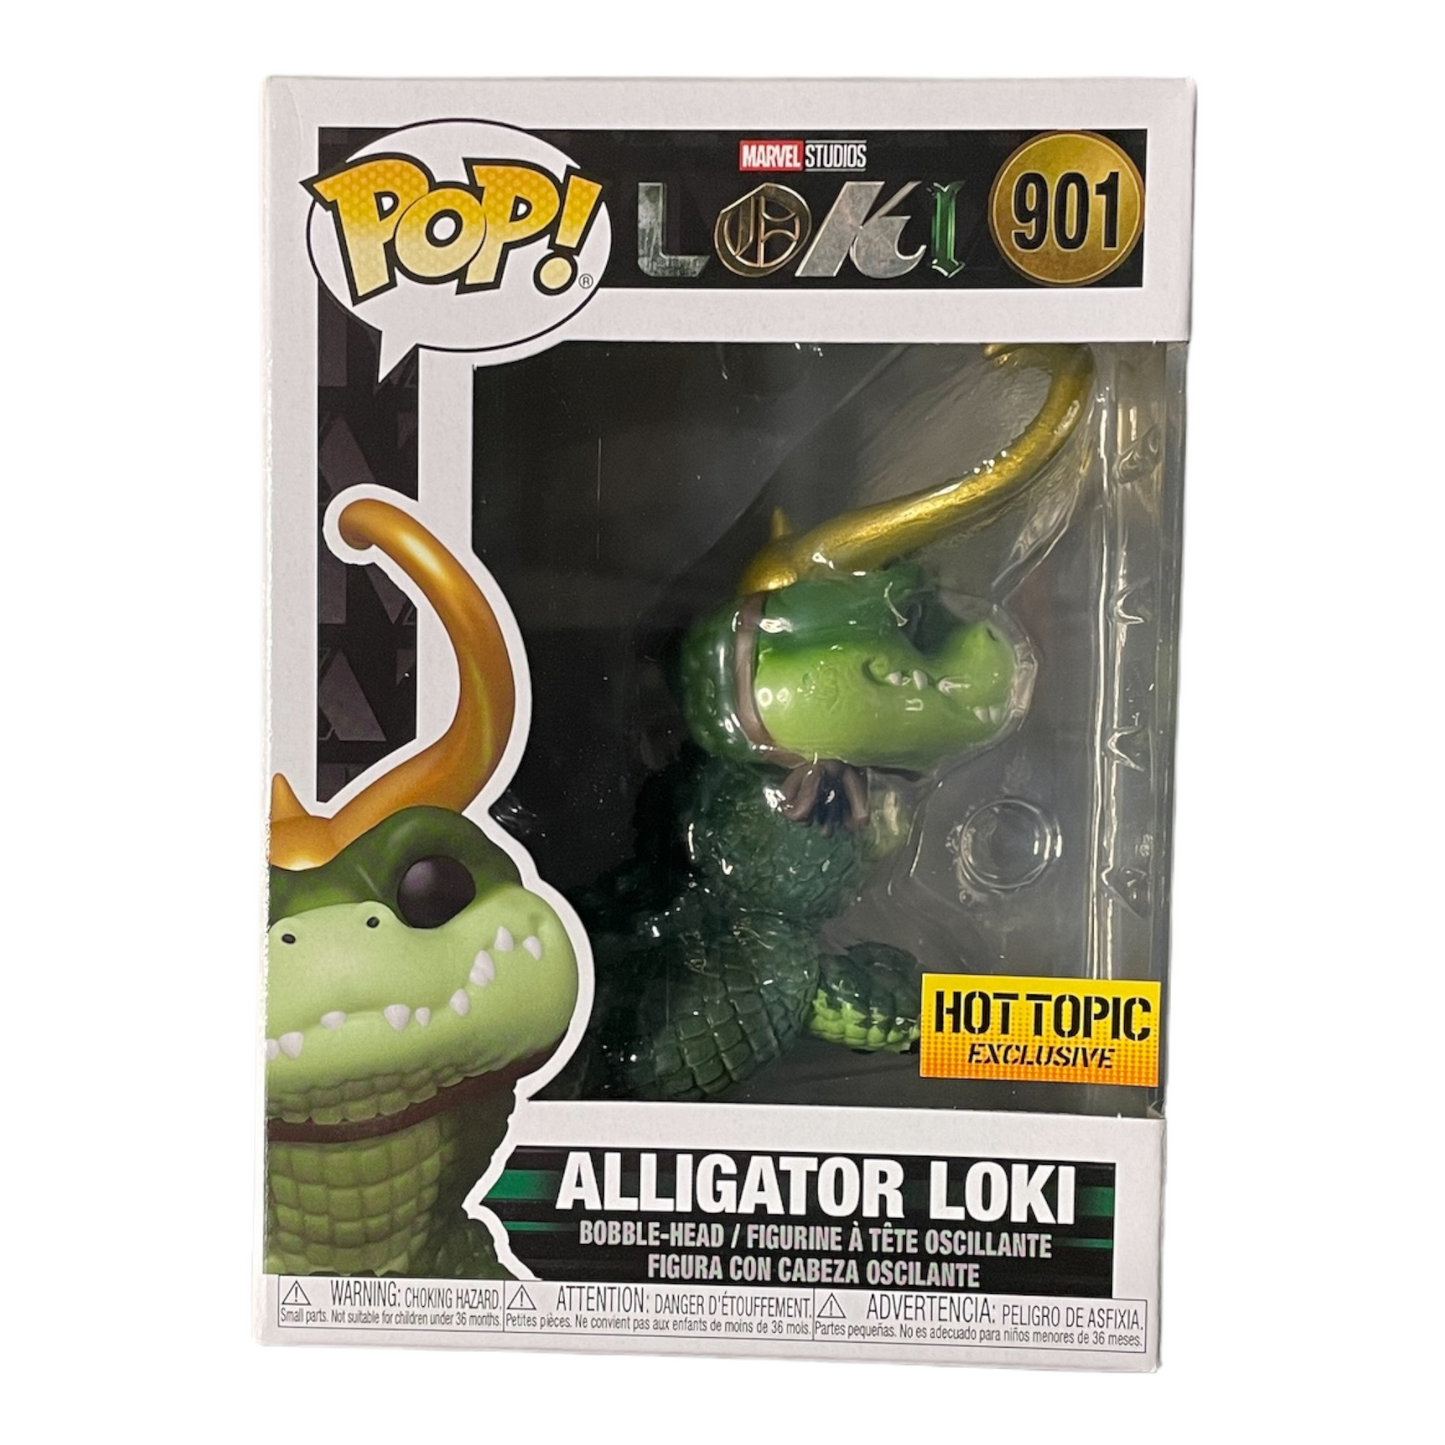 Alligator Loki #901